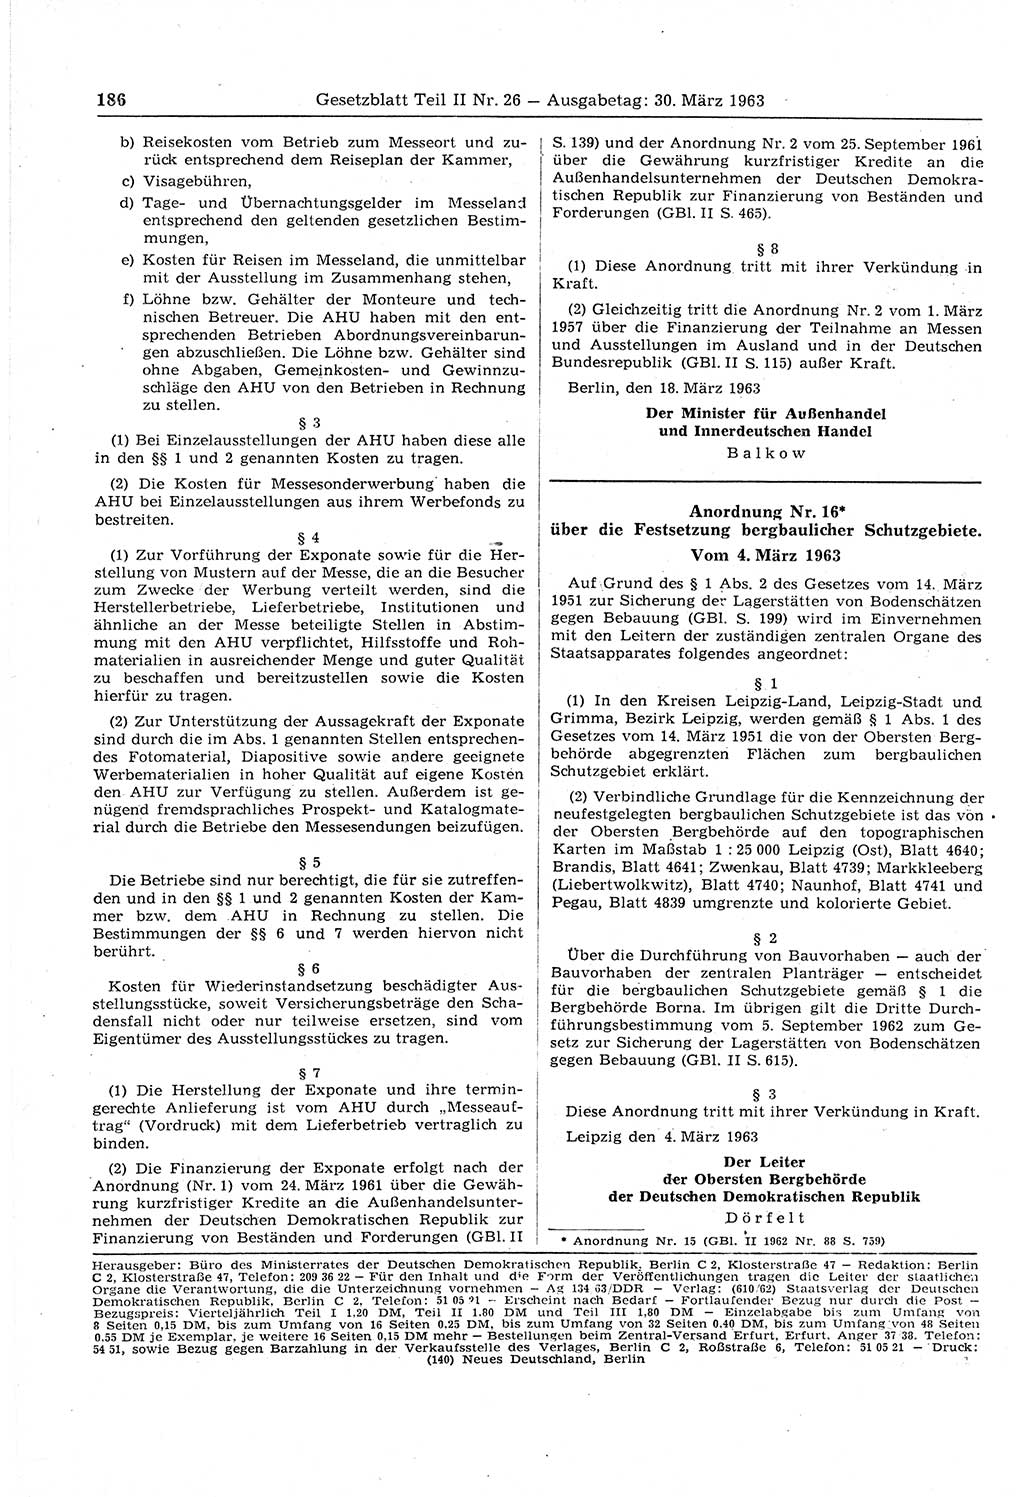 Gesetzblatt (GBl.) der Deutschen Demokratischen Republik (DDR) Teil ⅠⅠ 1963, Seite 186 (GBl. DDR ⅠⅠ 1963, S. 186)